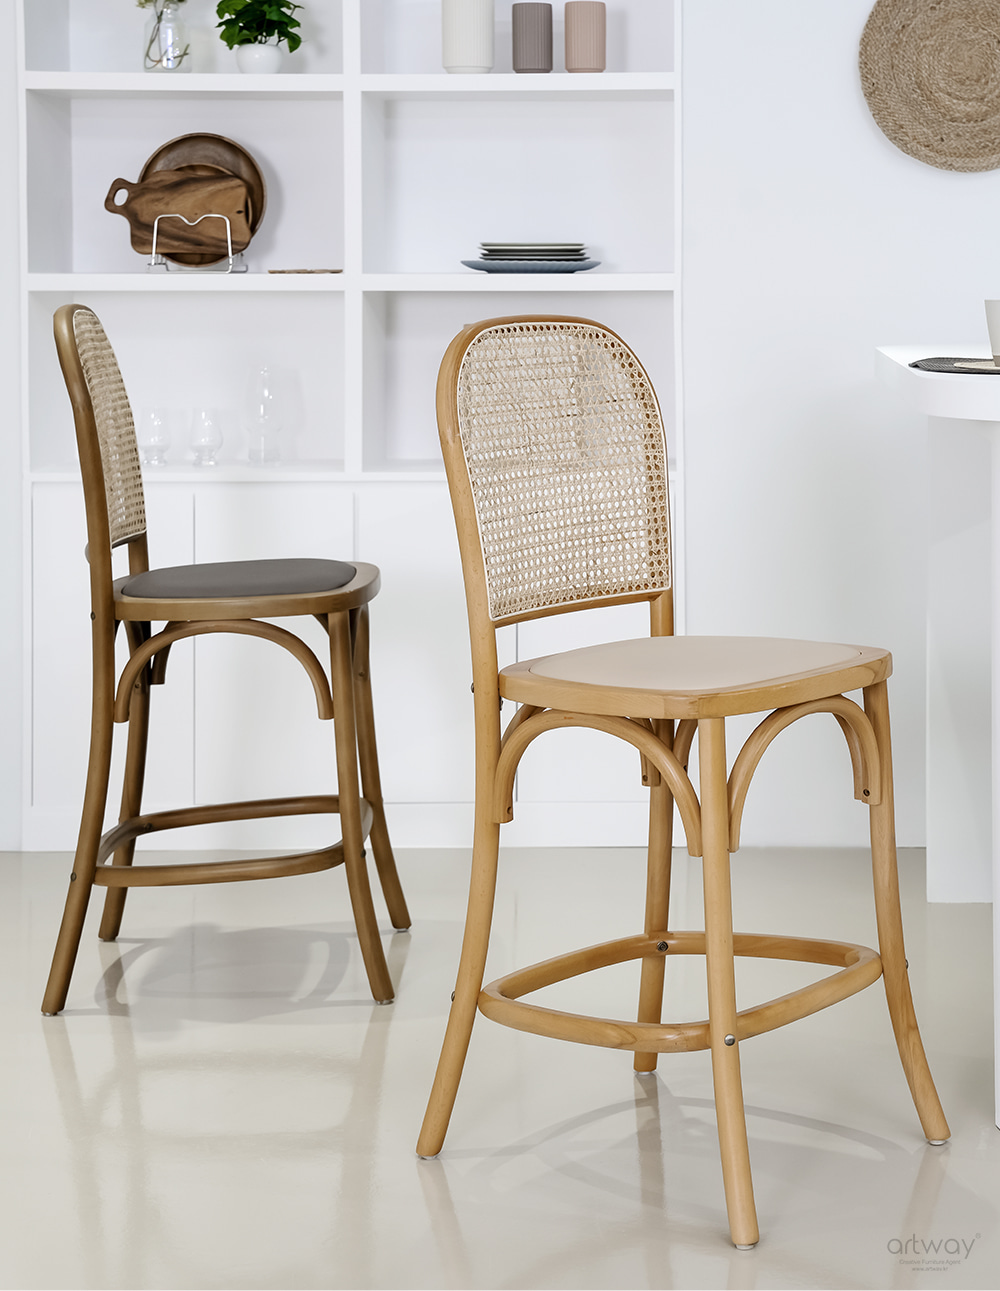 의자/바텐 높이 측정 팁 / 키워드 : 디자인바텐, 인테리어바텐, 높은의자, 바의자, 바텐의자, 바텐, 아일랜드식탁의자, 철재의자, 디자인의자, 카페의자